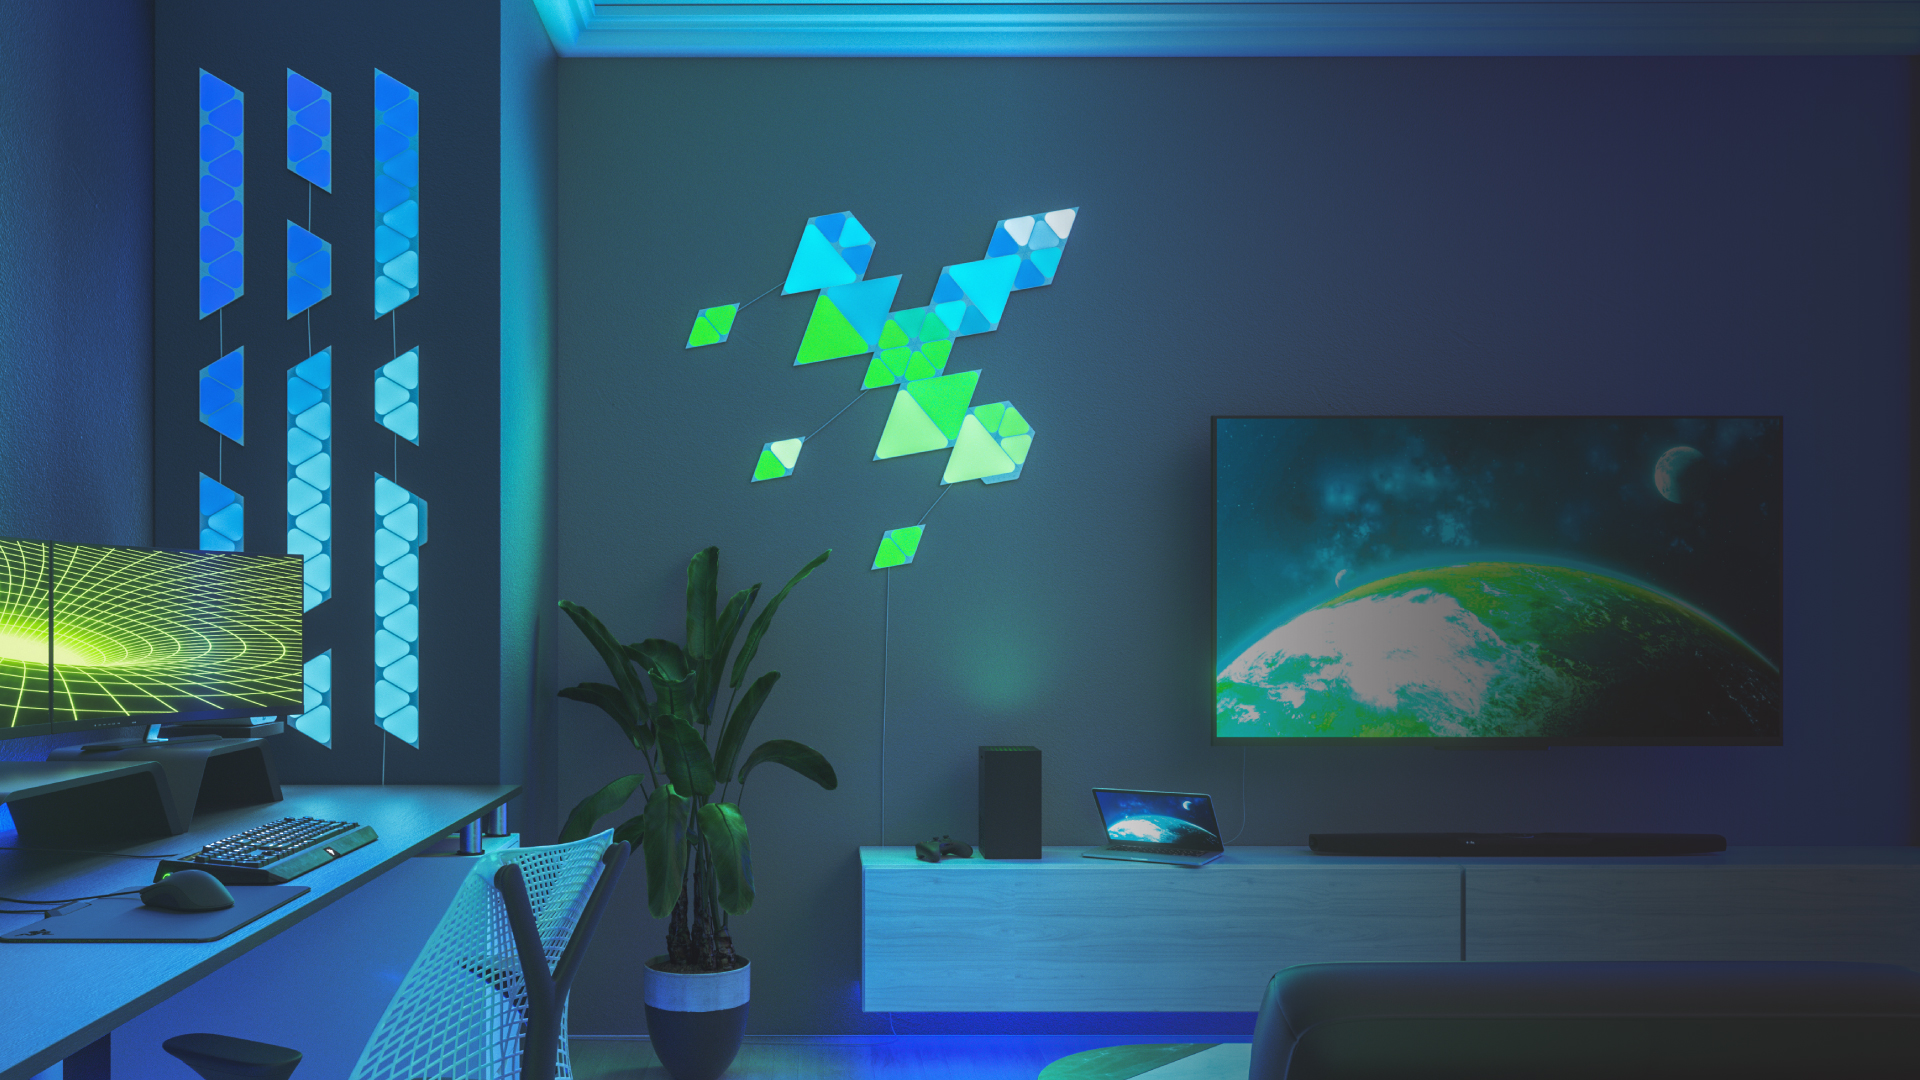 リビングルームの壁のTVの左側にNanoleaf Shapes TrianglesおよびMini Trianglesを、別の壁にNanoleaf Shapes Mini Trianglesを取り付けた画像です。RGB照明のデザインはリンカーとフレックスリンカーでつながり、両面テープで壁に取り付けることができます。究極のエンターテイメント体験を創造するのにぴったりなリビングルーム照明。